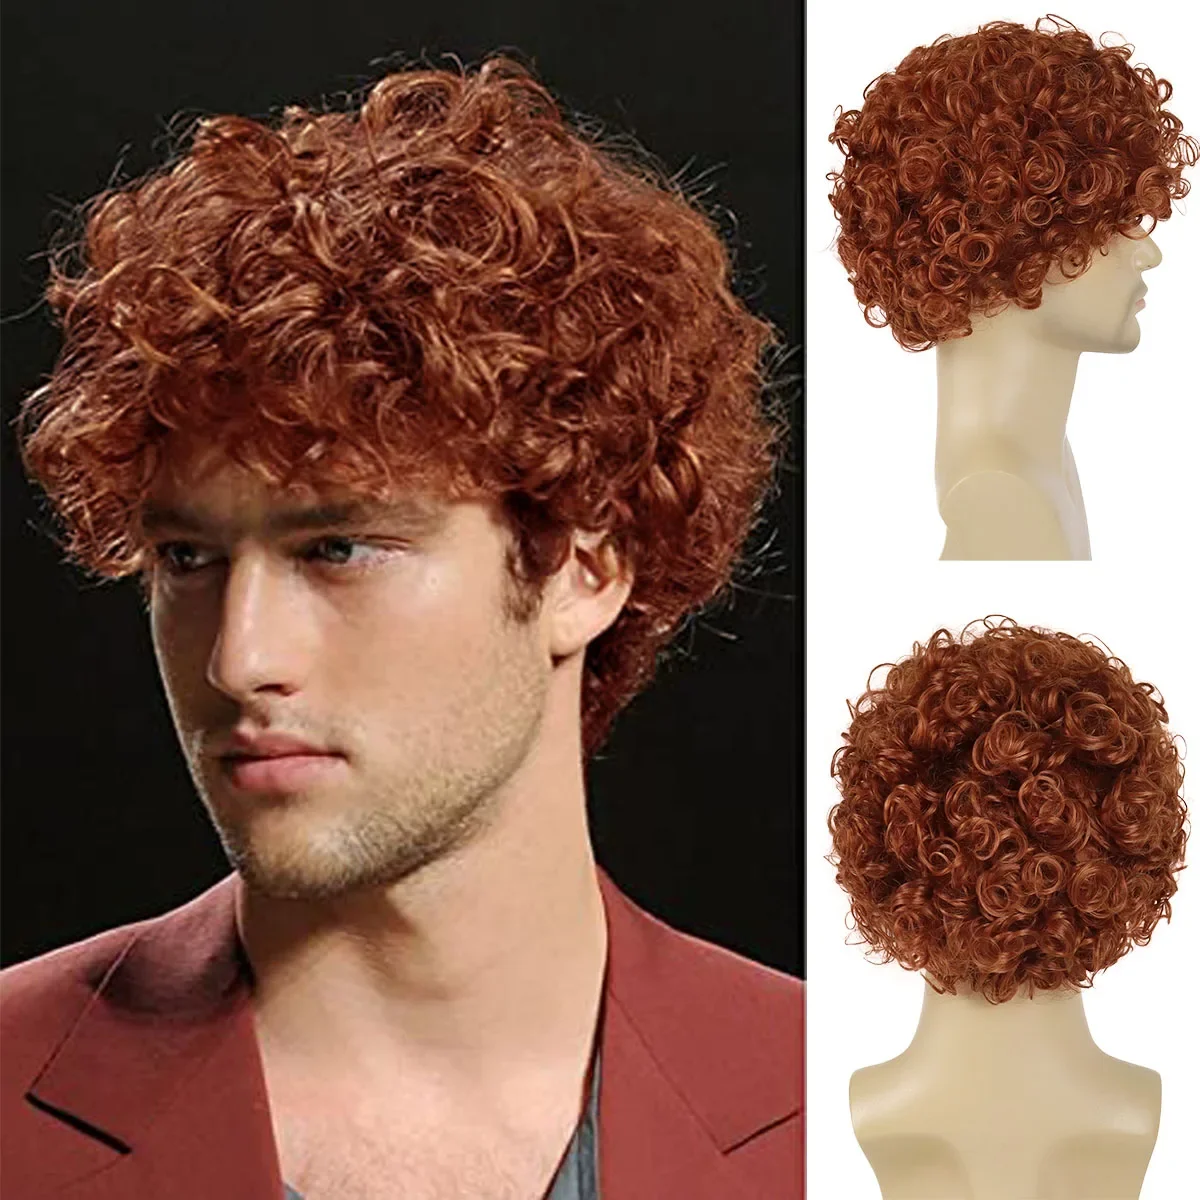 

Синтетические афро вьющиеся волосы GNIMEGIL оранжевого, коричневого цвета, для мужчин, короткий парик с челкой, натуральные кудри, пушистая прическа, костюм для косплея